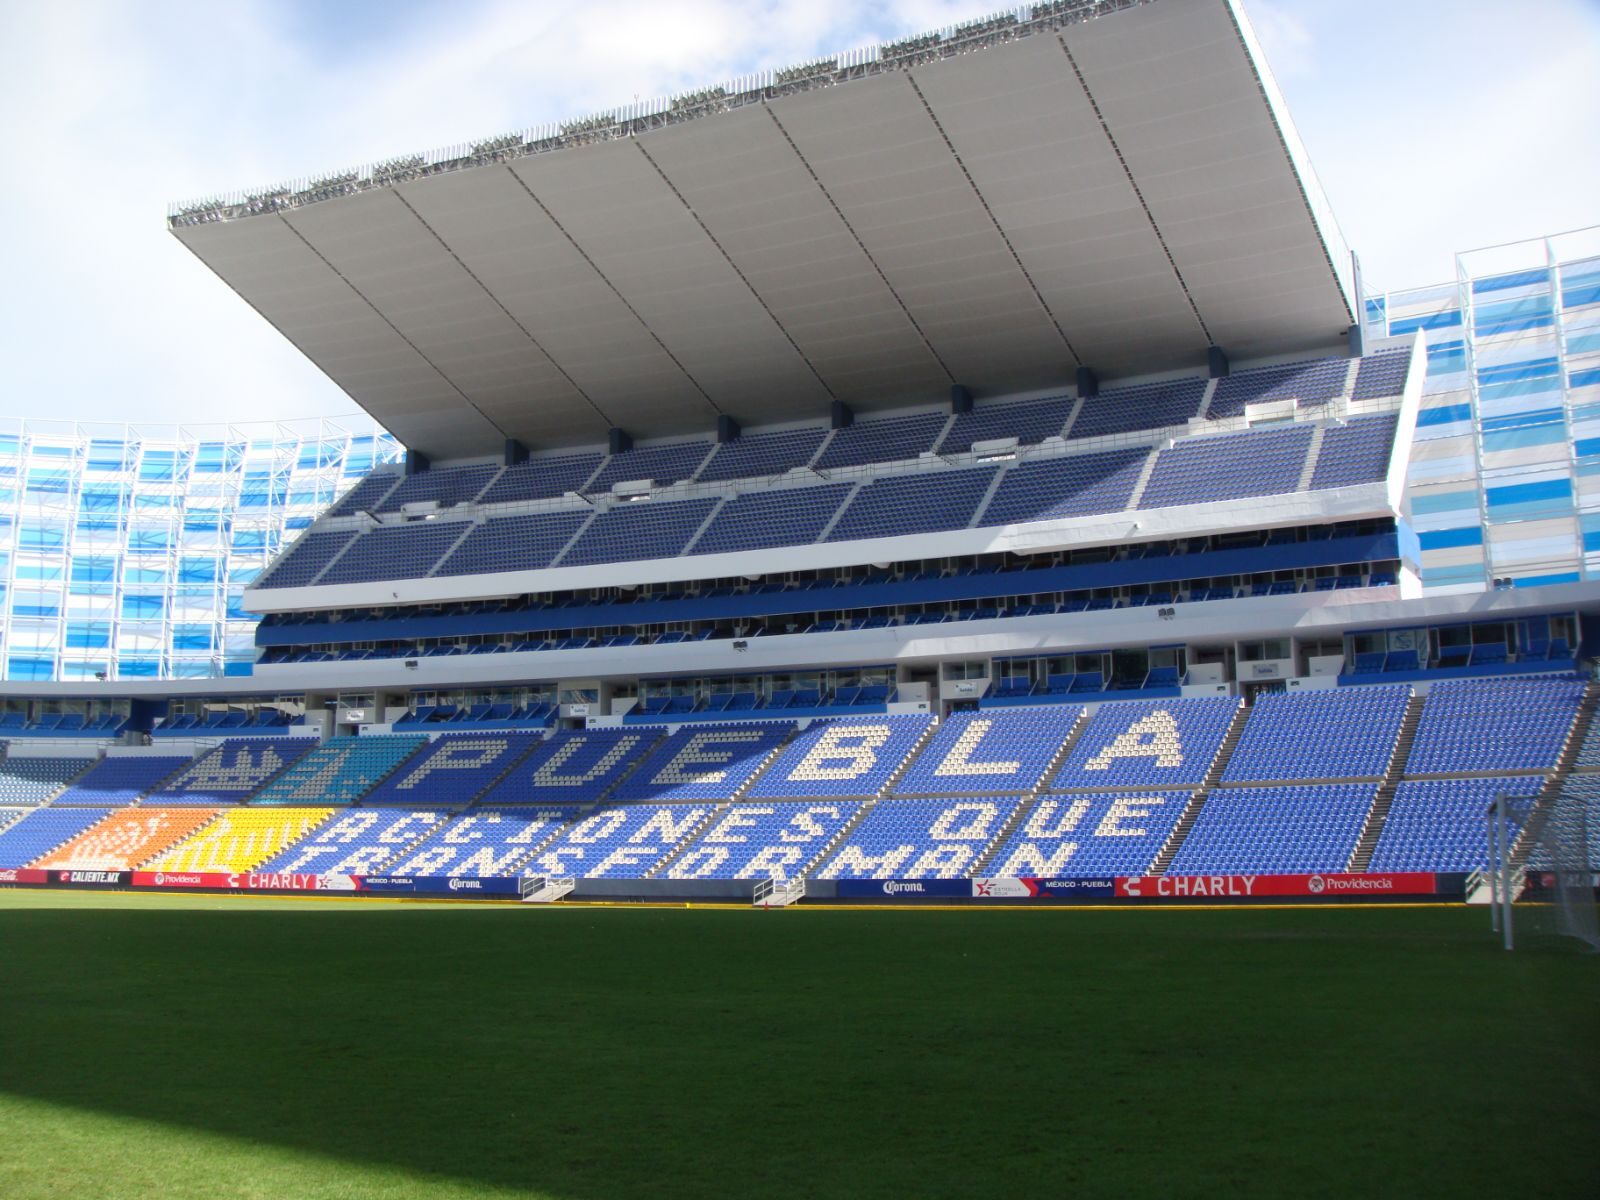 Milénio Stadium - Edição 1426 - 2019-04-05 by Milénio Stadium - Issuu